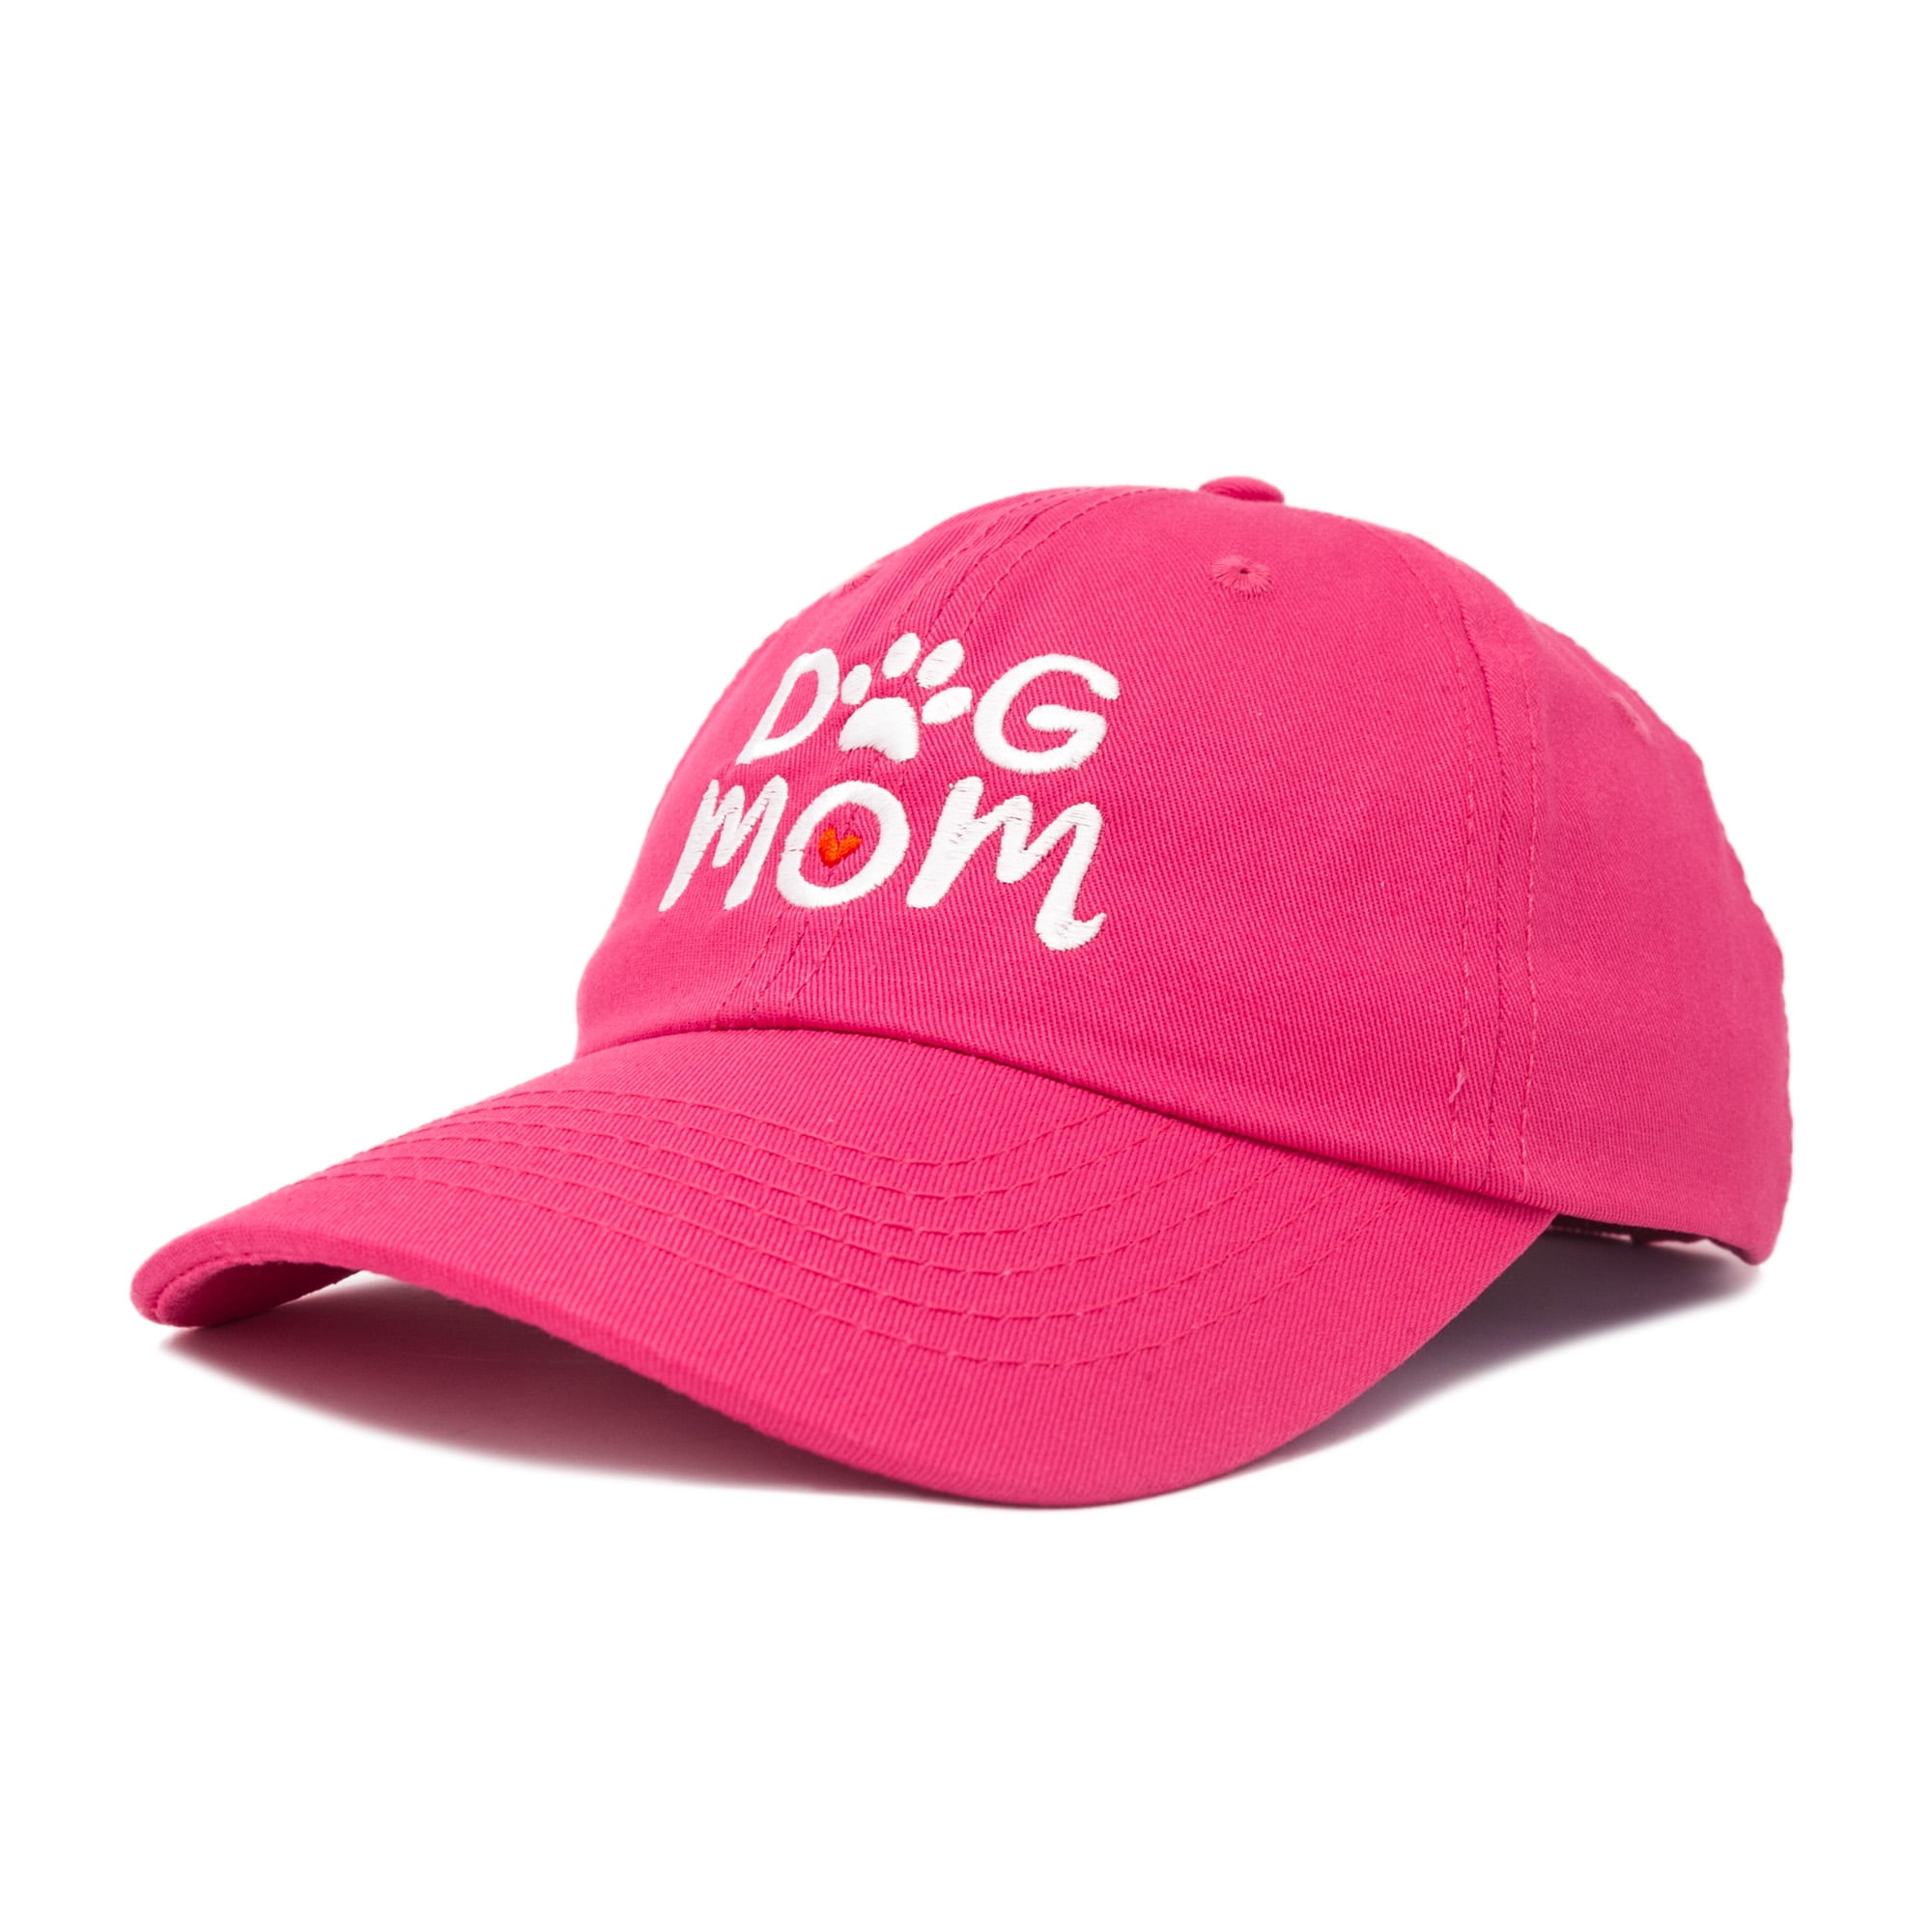 women's hats dallas